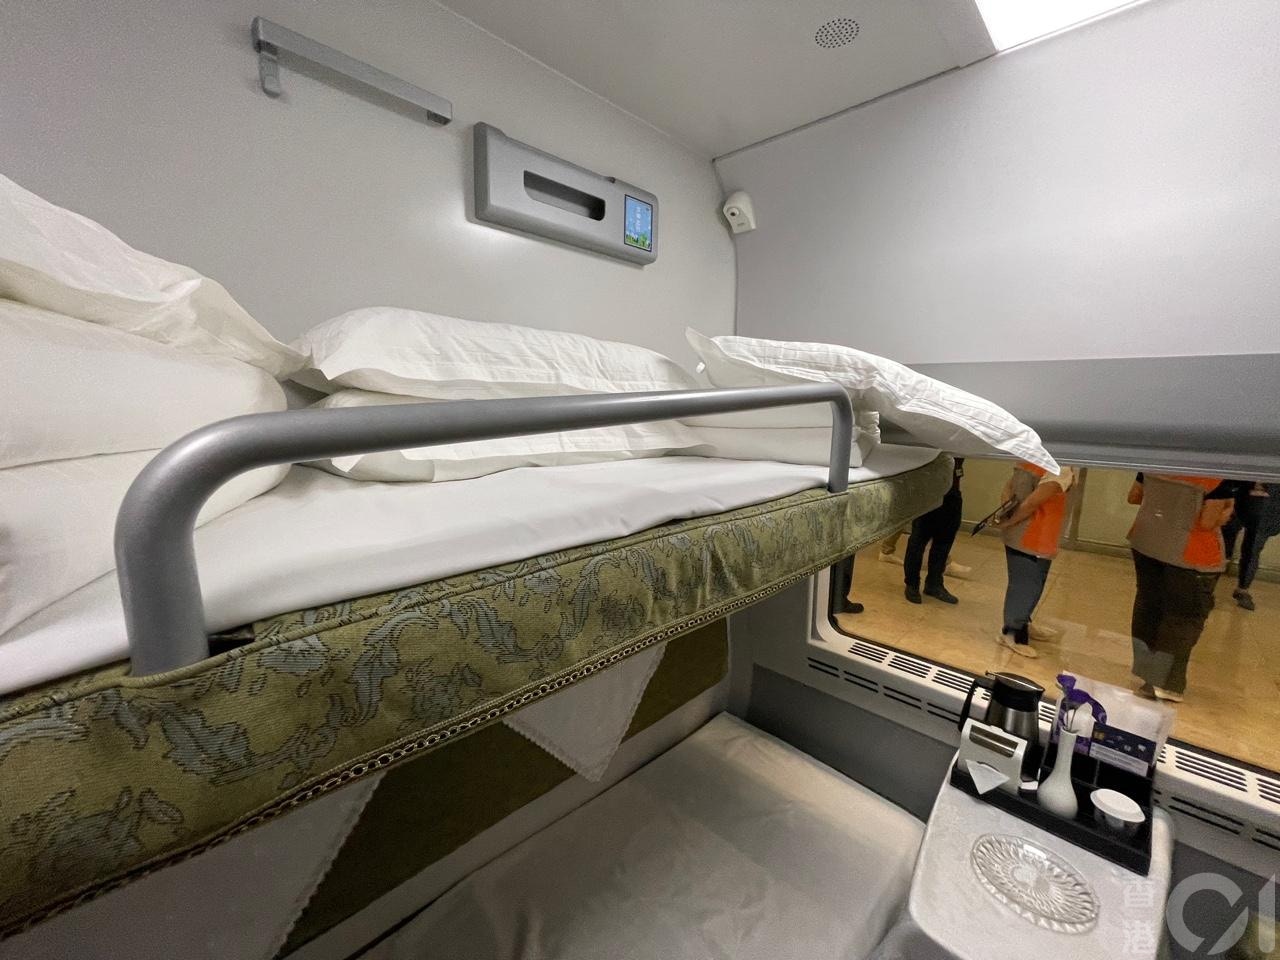 来往香港至上海的高铁通宵卧铺列车6月15日晚启航。列车特点是特设高级卧铺床位，票价每位高达2,128元。记者高176厘米，睡在床上可伸直双脚；不过床褥有点硬，枕头只有一只半手掌厚度，睡惯「软床高枕」乘客未必习惯。(潘耀升摄)